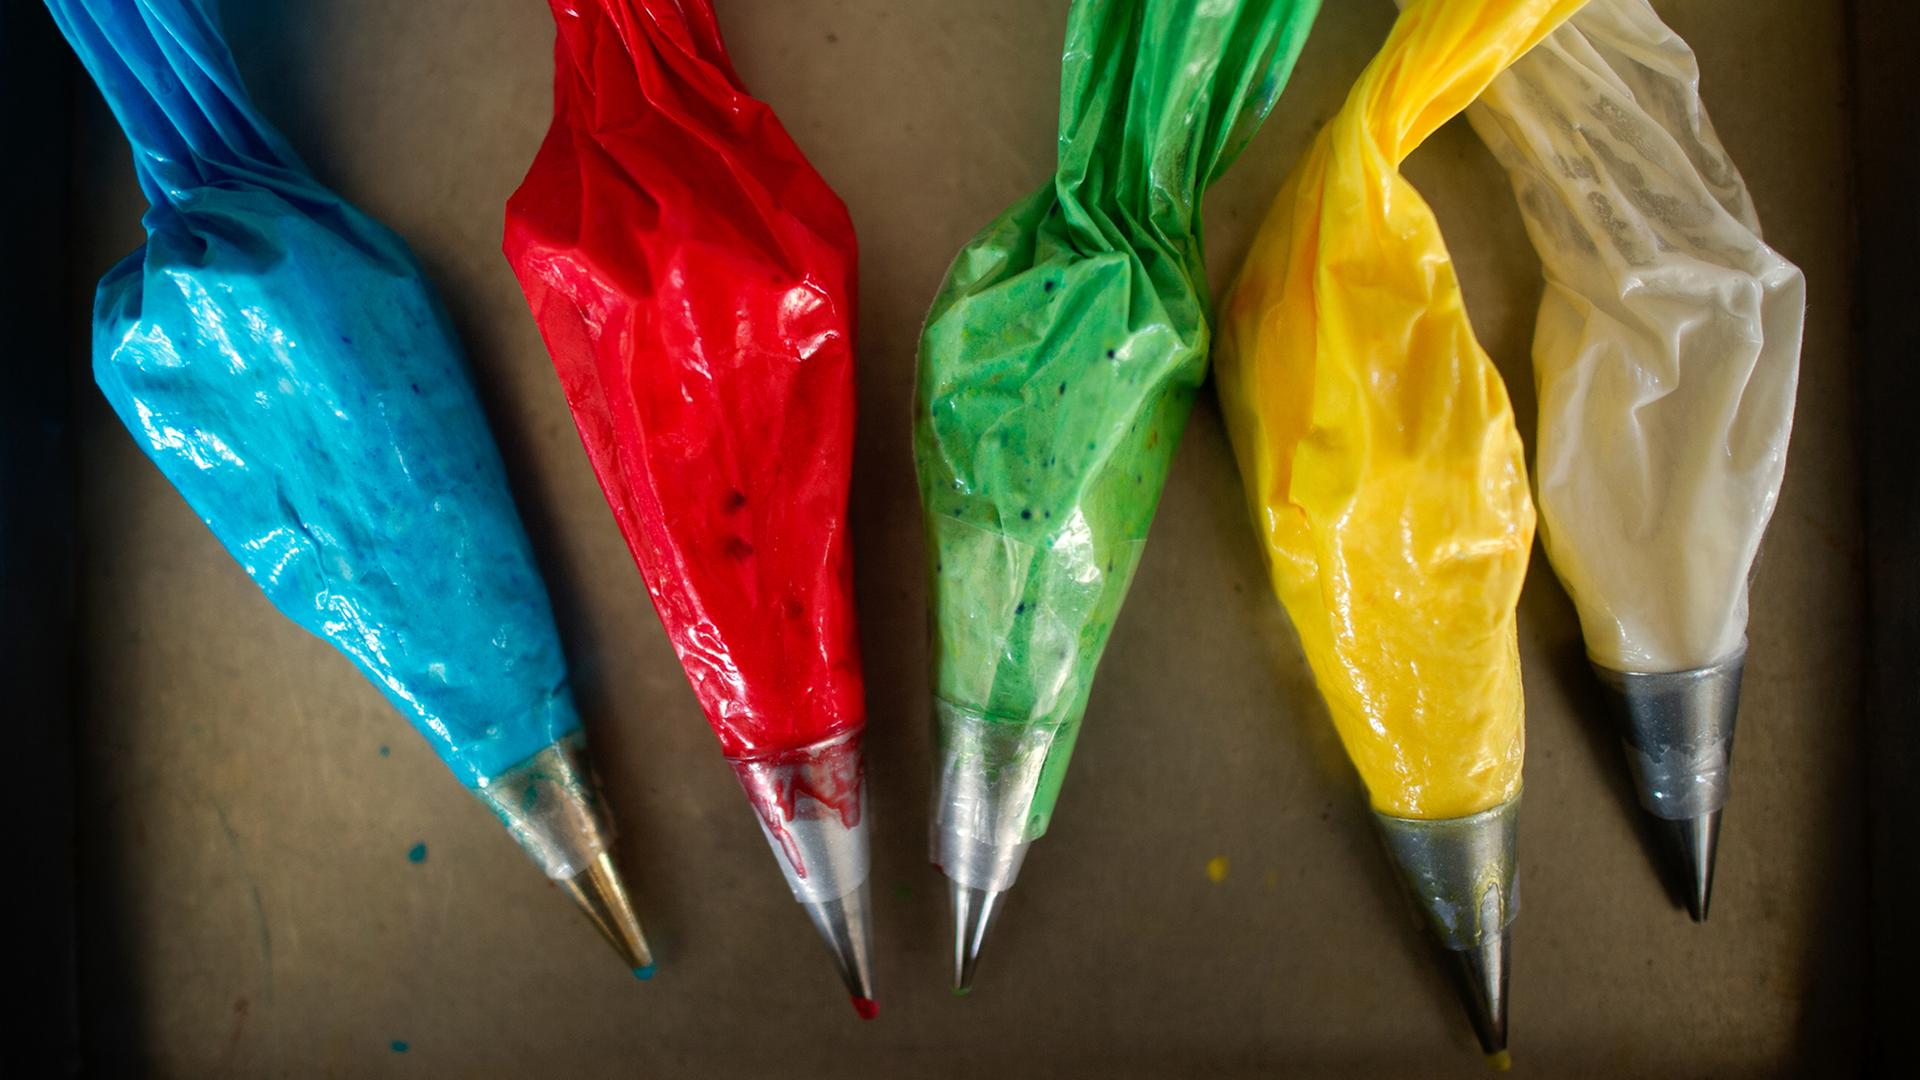 Zuckergusstüten mit Lebensmittelfarbe in verschiedenen Farben liegen auf einem Tisch in einer Bäckerei.